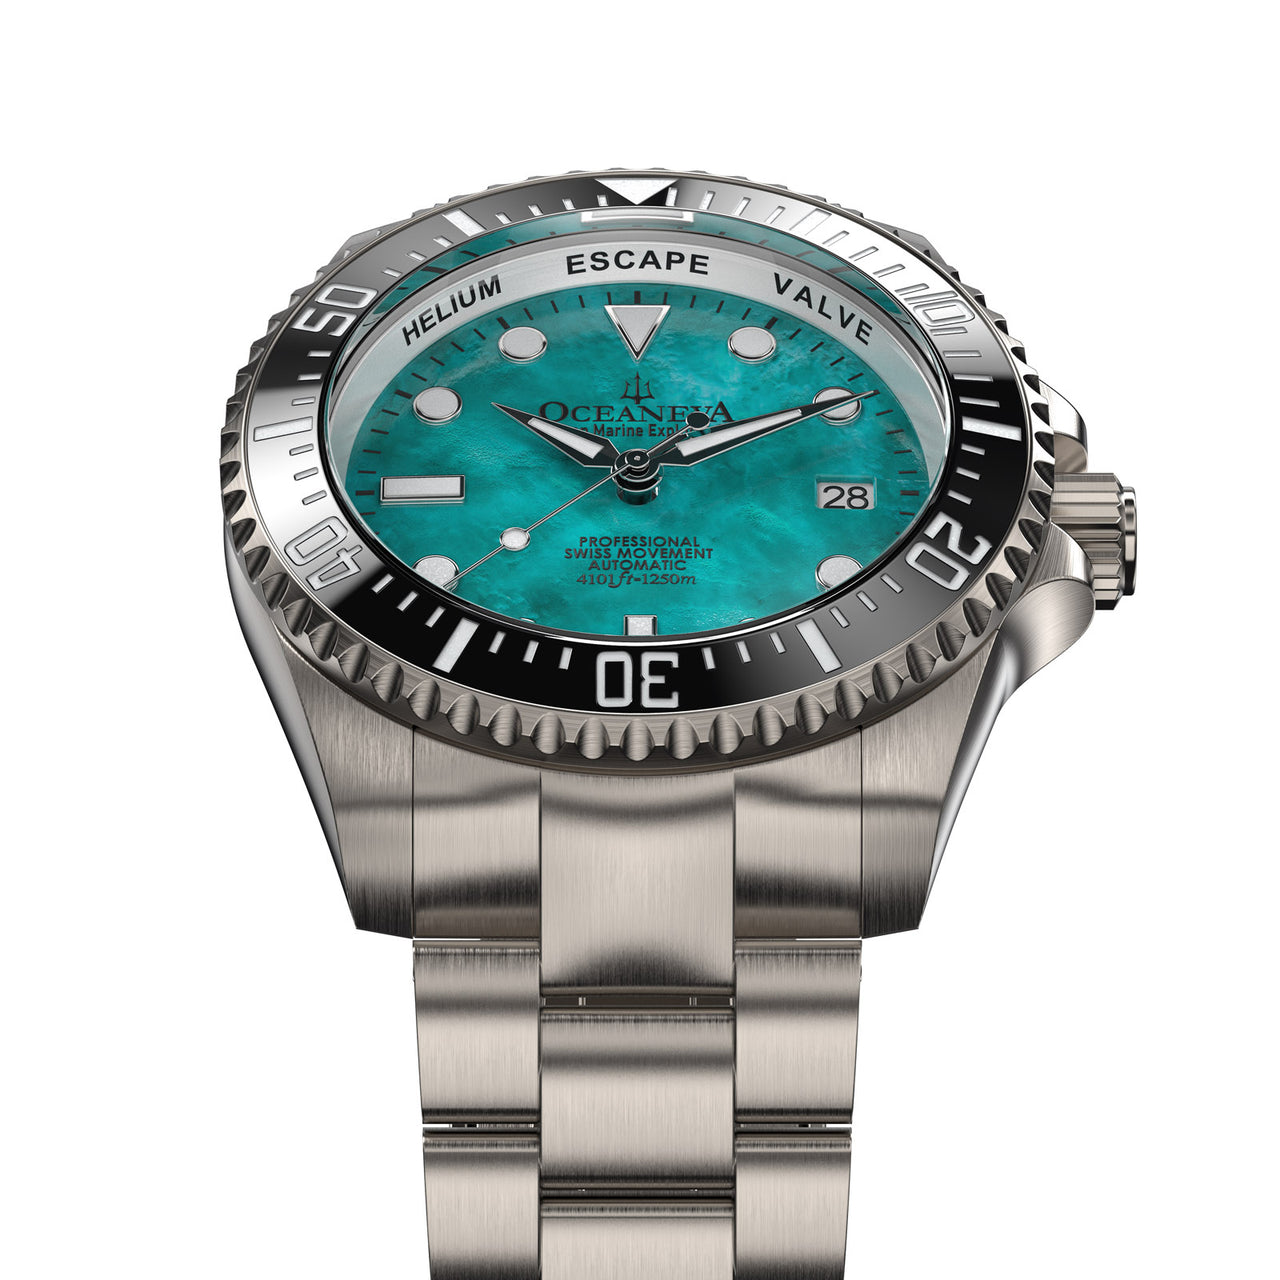 Oceaneva™ Men's Deep Marine Explorer II 1250M Titanium Watch Aquamarine Mother of Pearl Dial